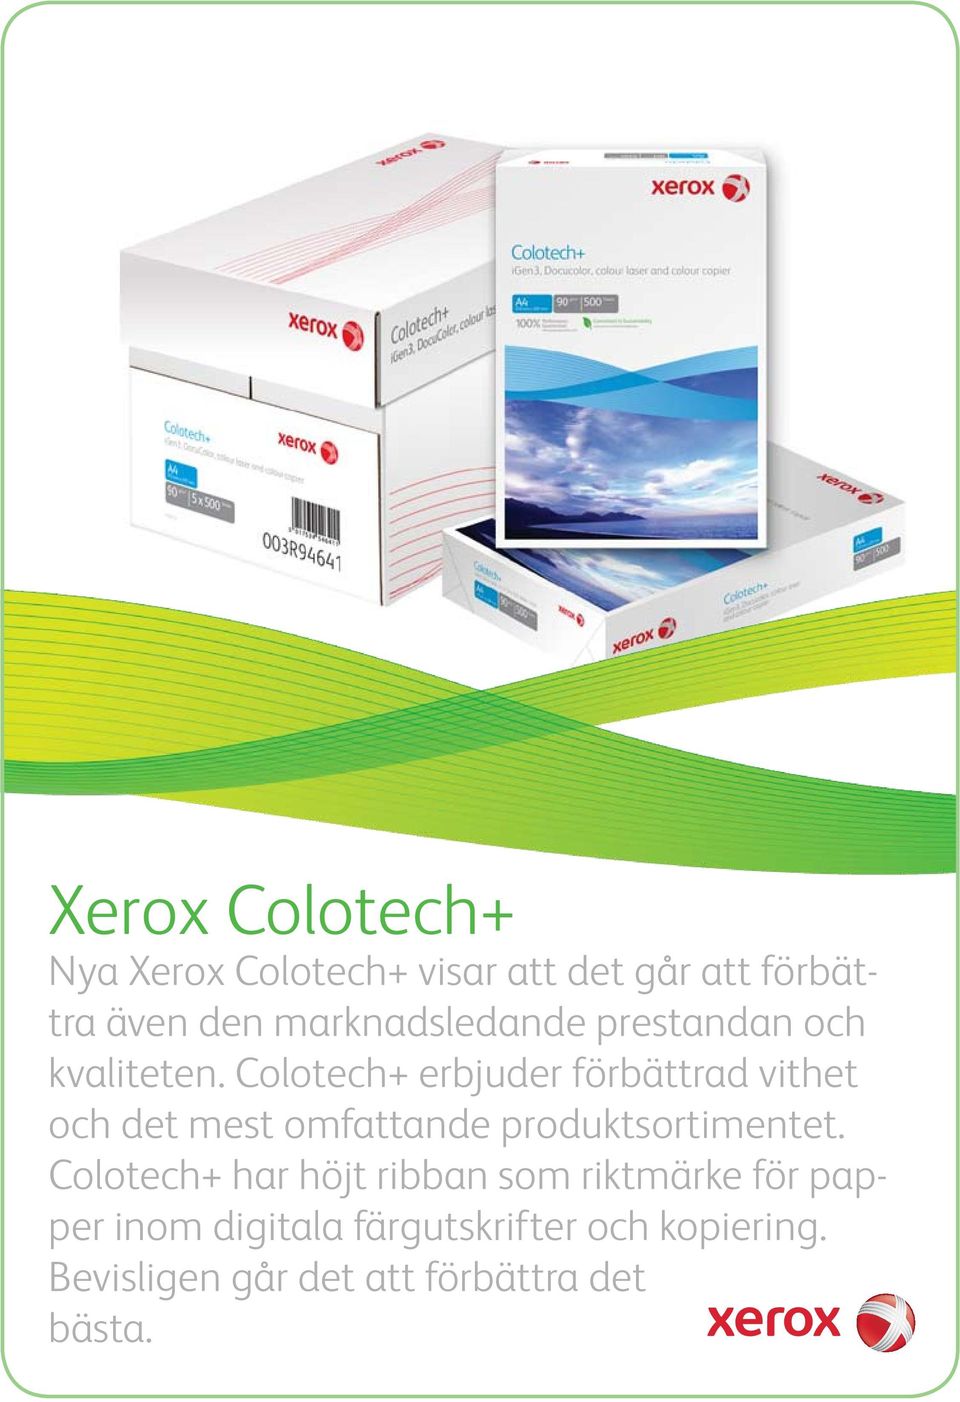 Colotech+ erbjuder förbättrad vithet och det mest omfattande produktsortimentet.